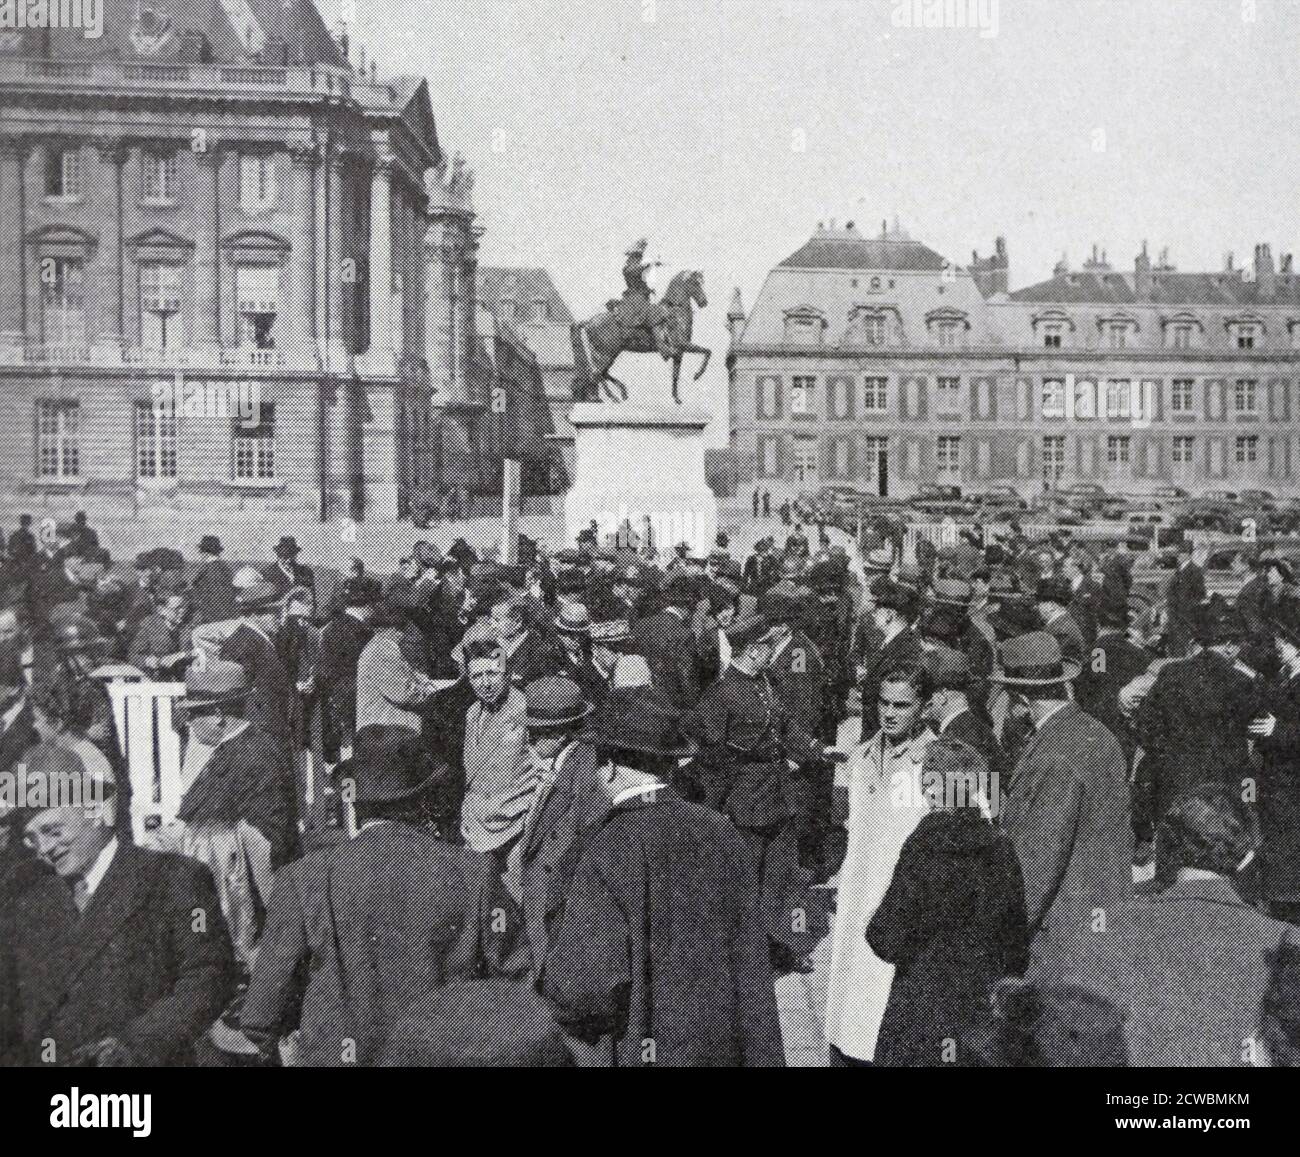 Schwarz-Weiß-Fotografie von Menschen, die darauf warten, Präsident Albert Lebrun (1871-1950) nach seiner Wiederwahl 1939 zu sehen. Stockfoto